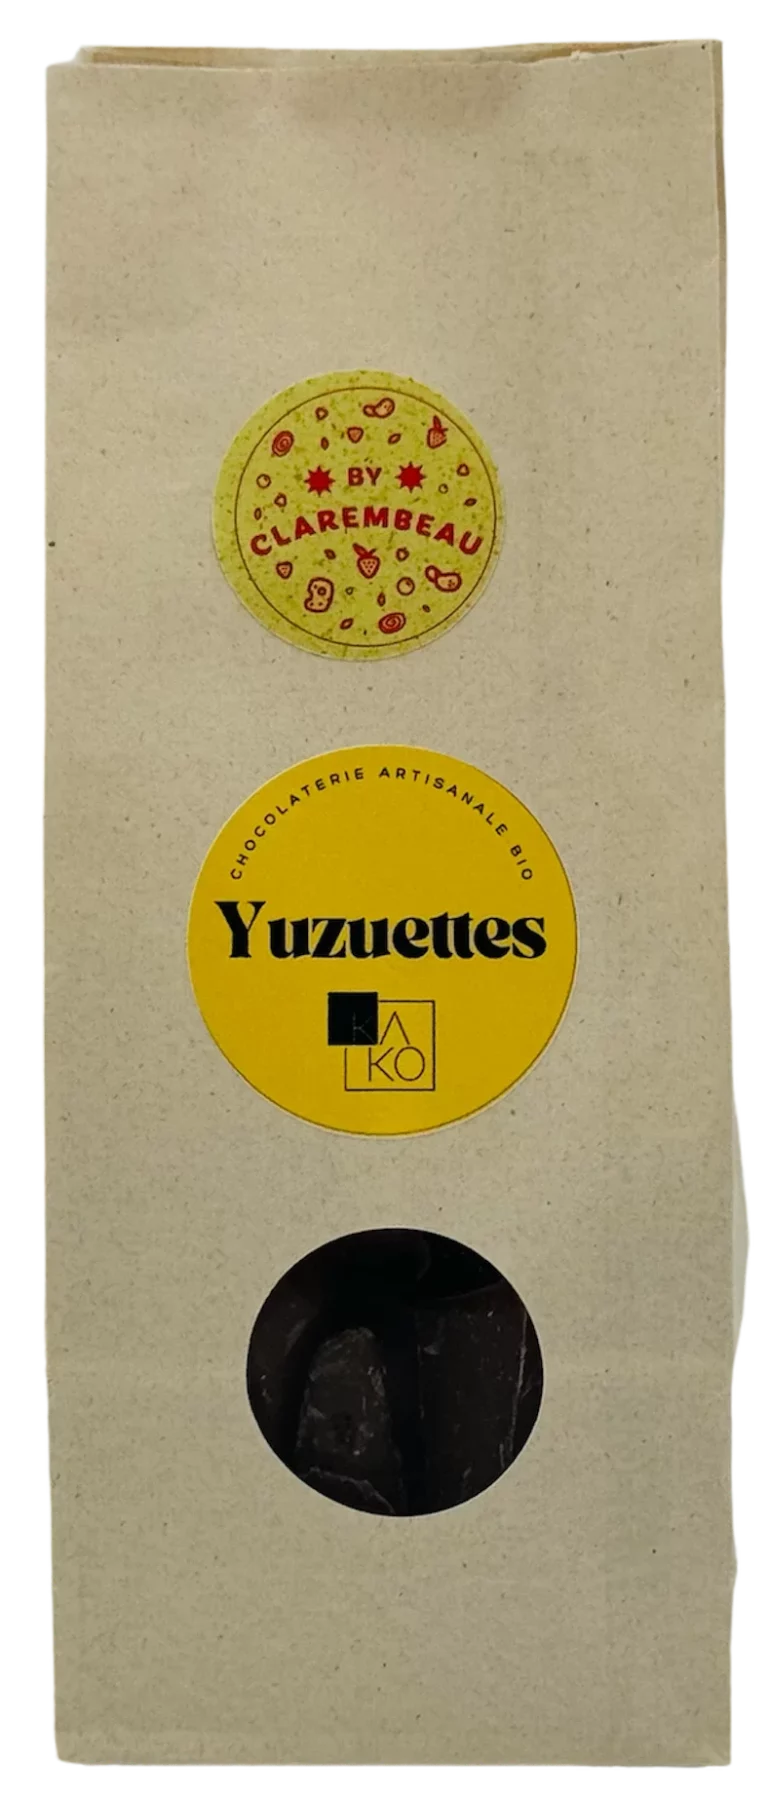 Yuzuettes